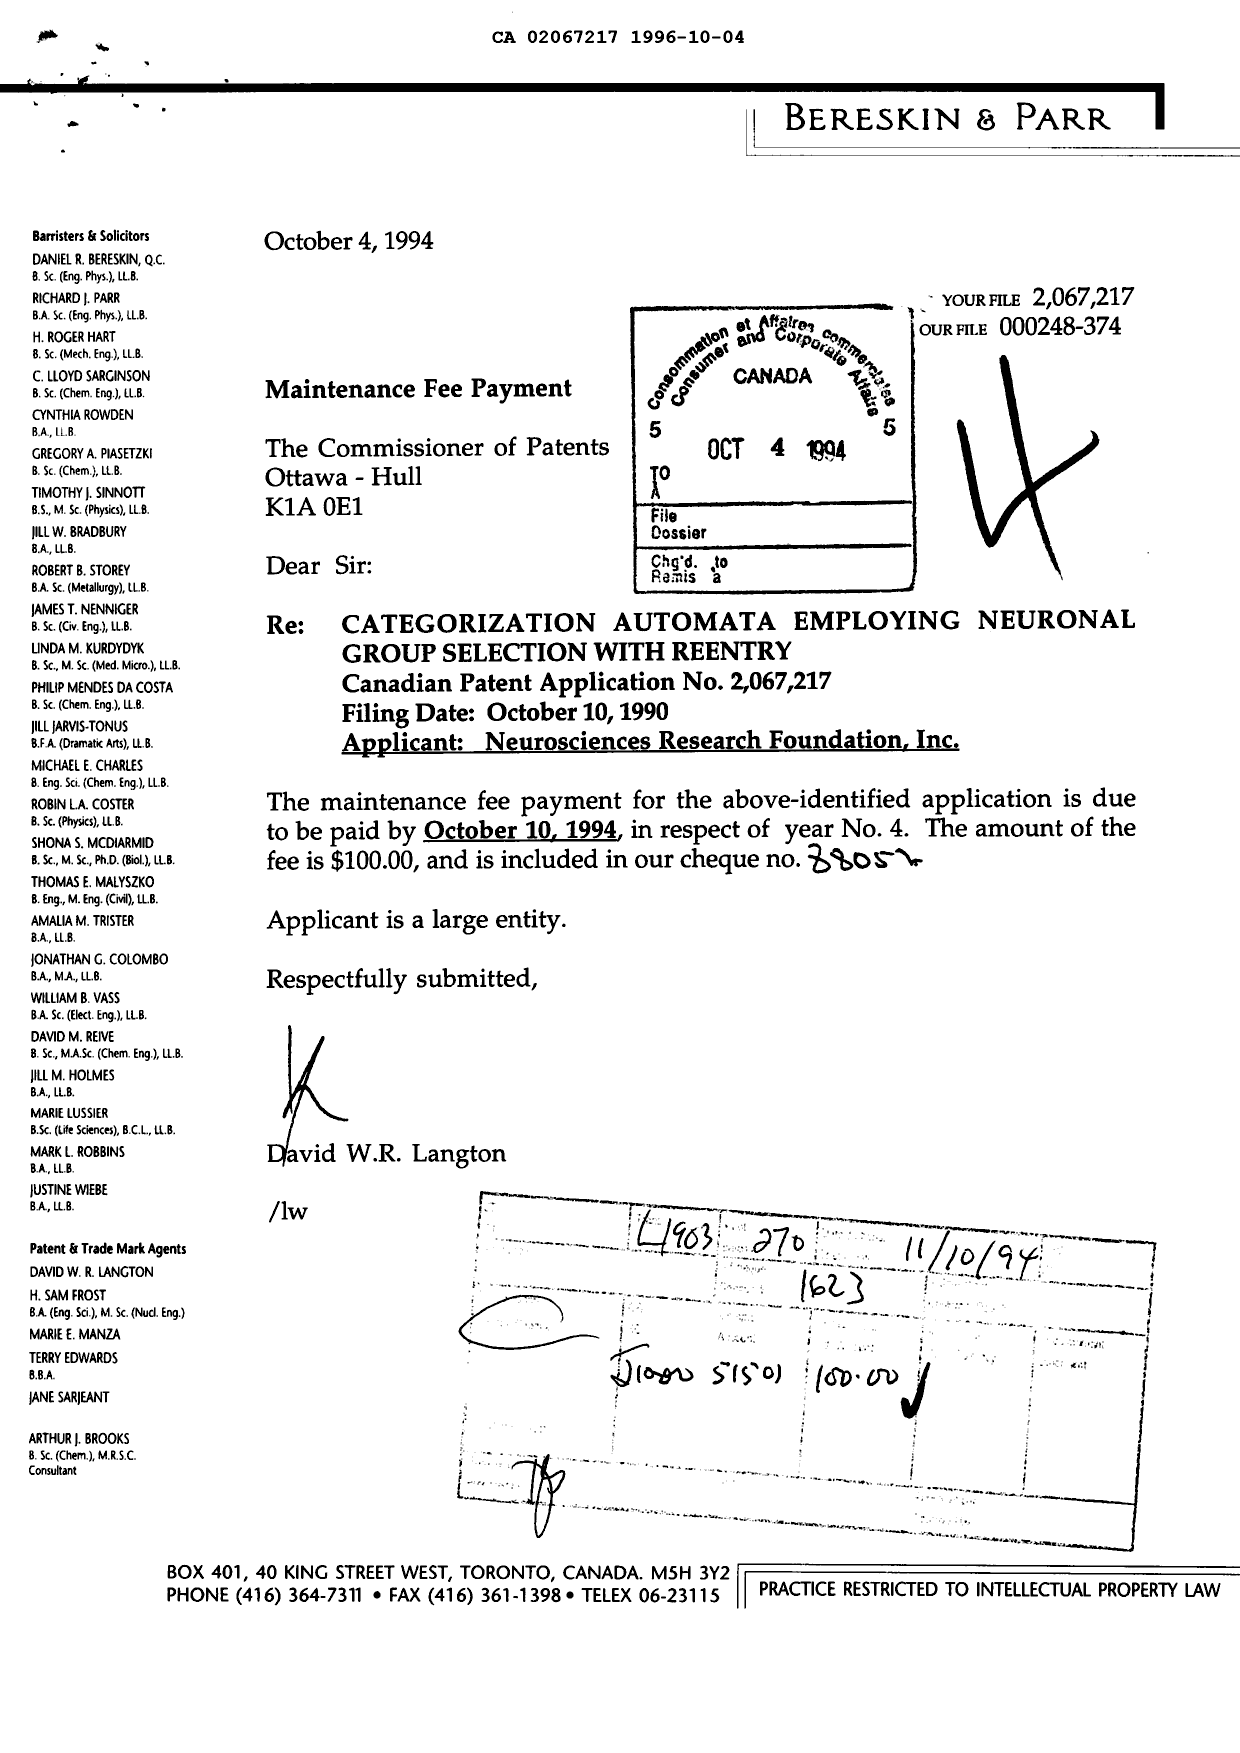 Document de brevet canadien 2067217. Taxes 19961004. Image 1 de 1